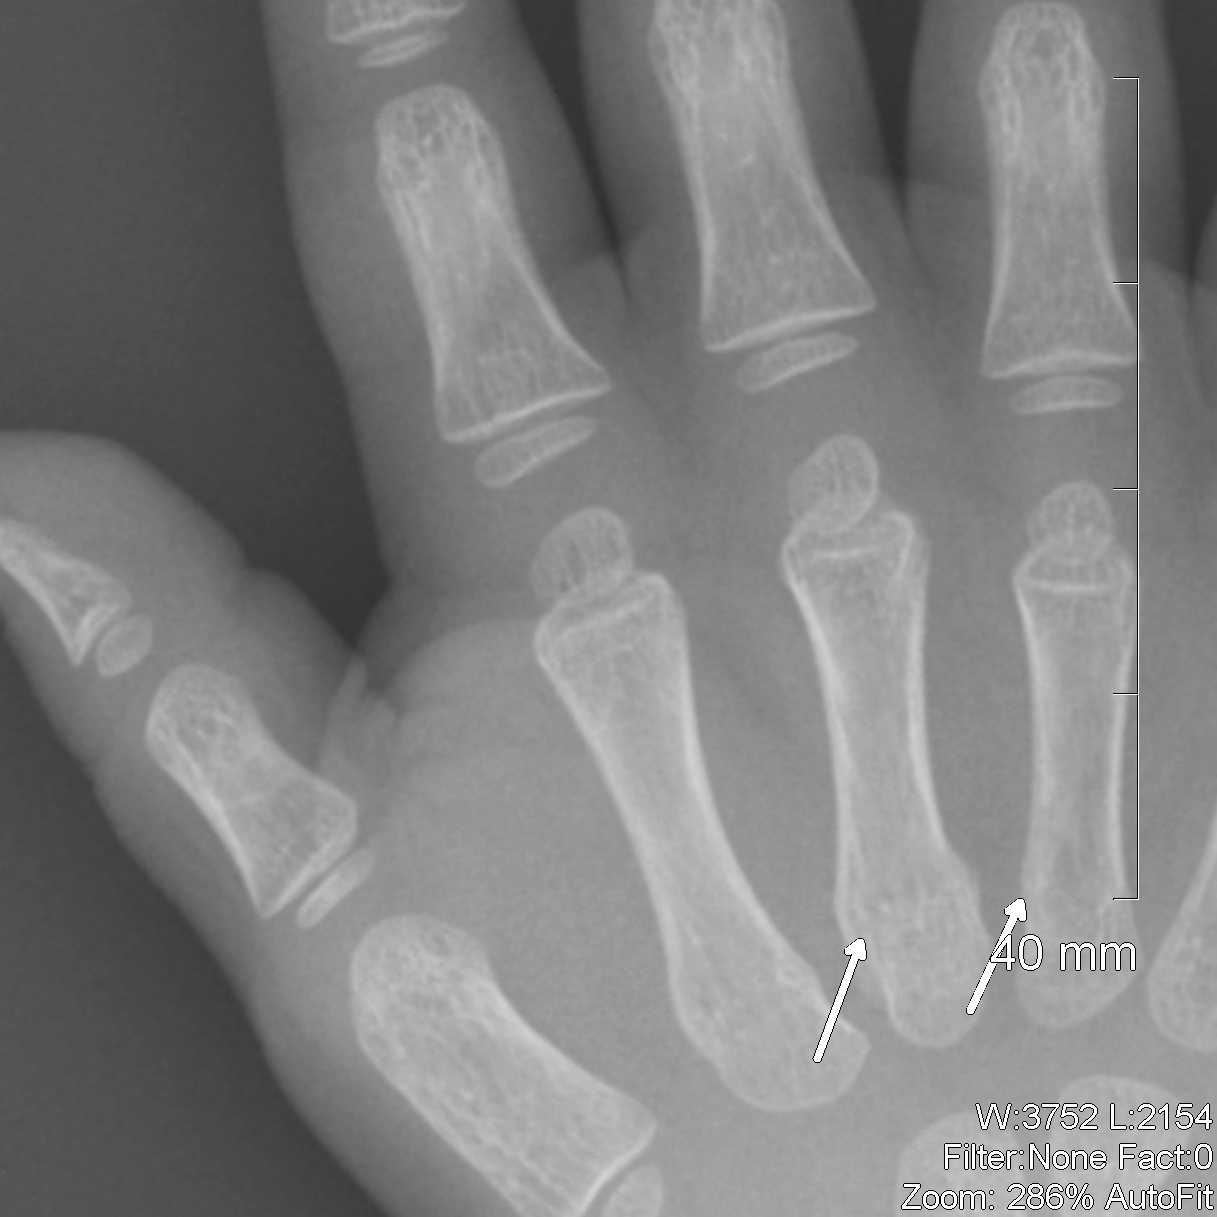 Broken Bone Hand